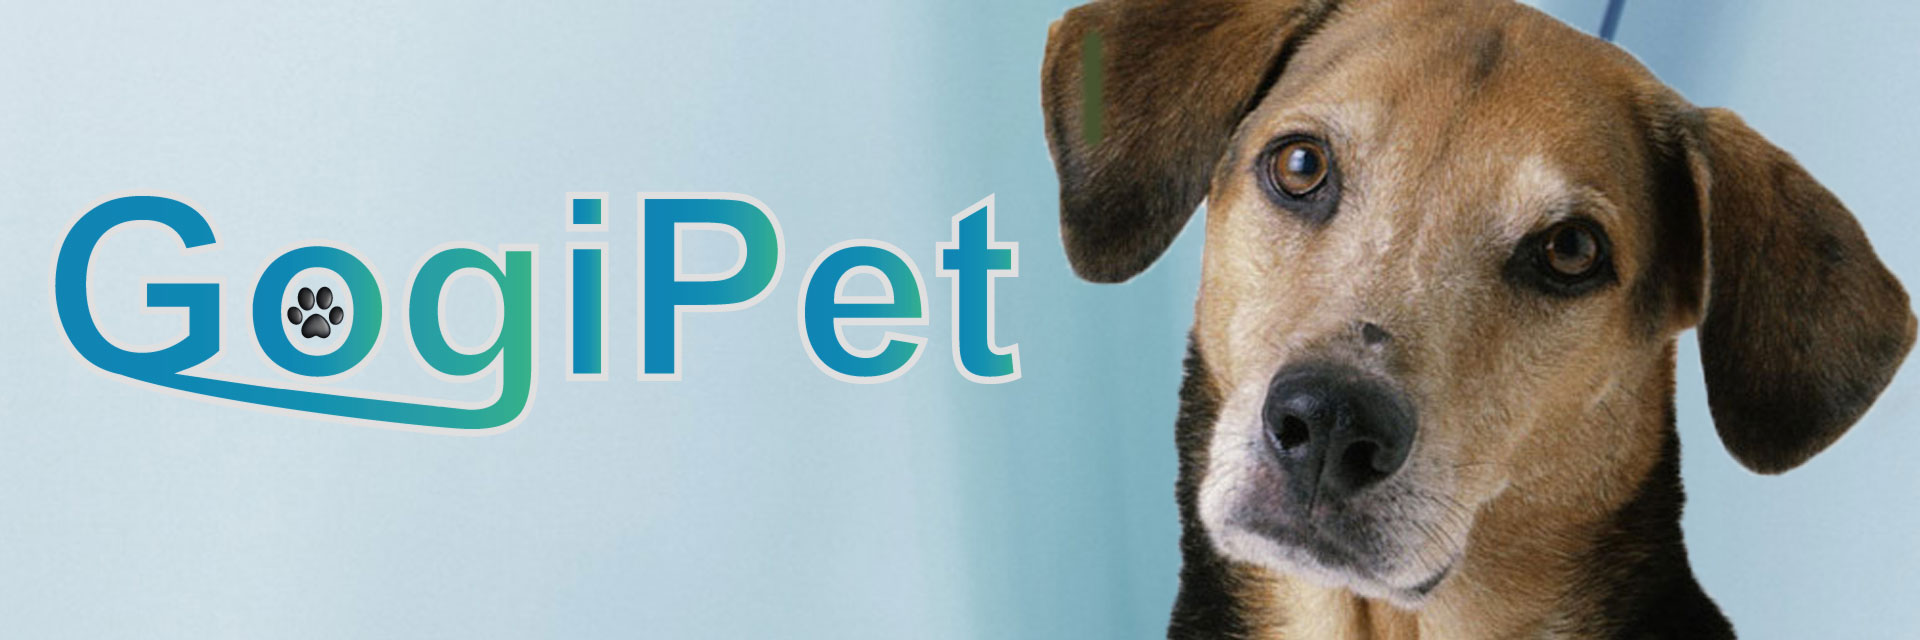 GogiPet el profesional para perros, gatos y artículos de peluquería canina